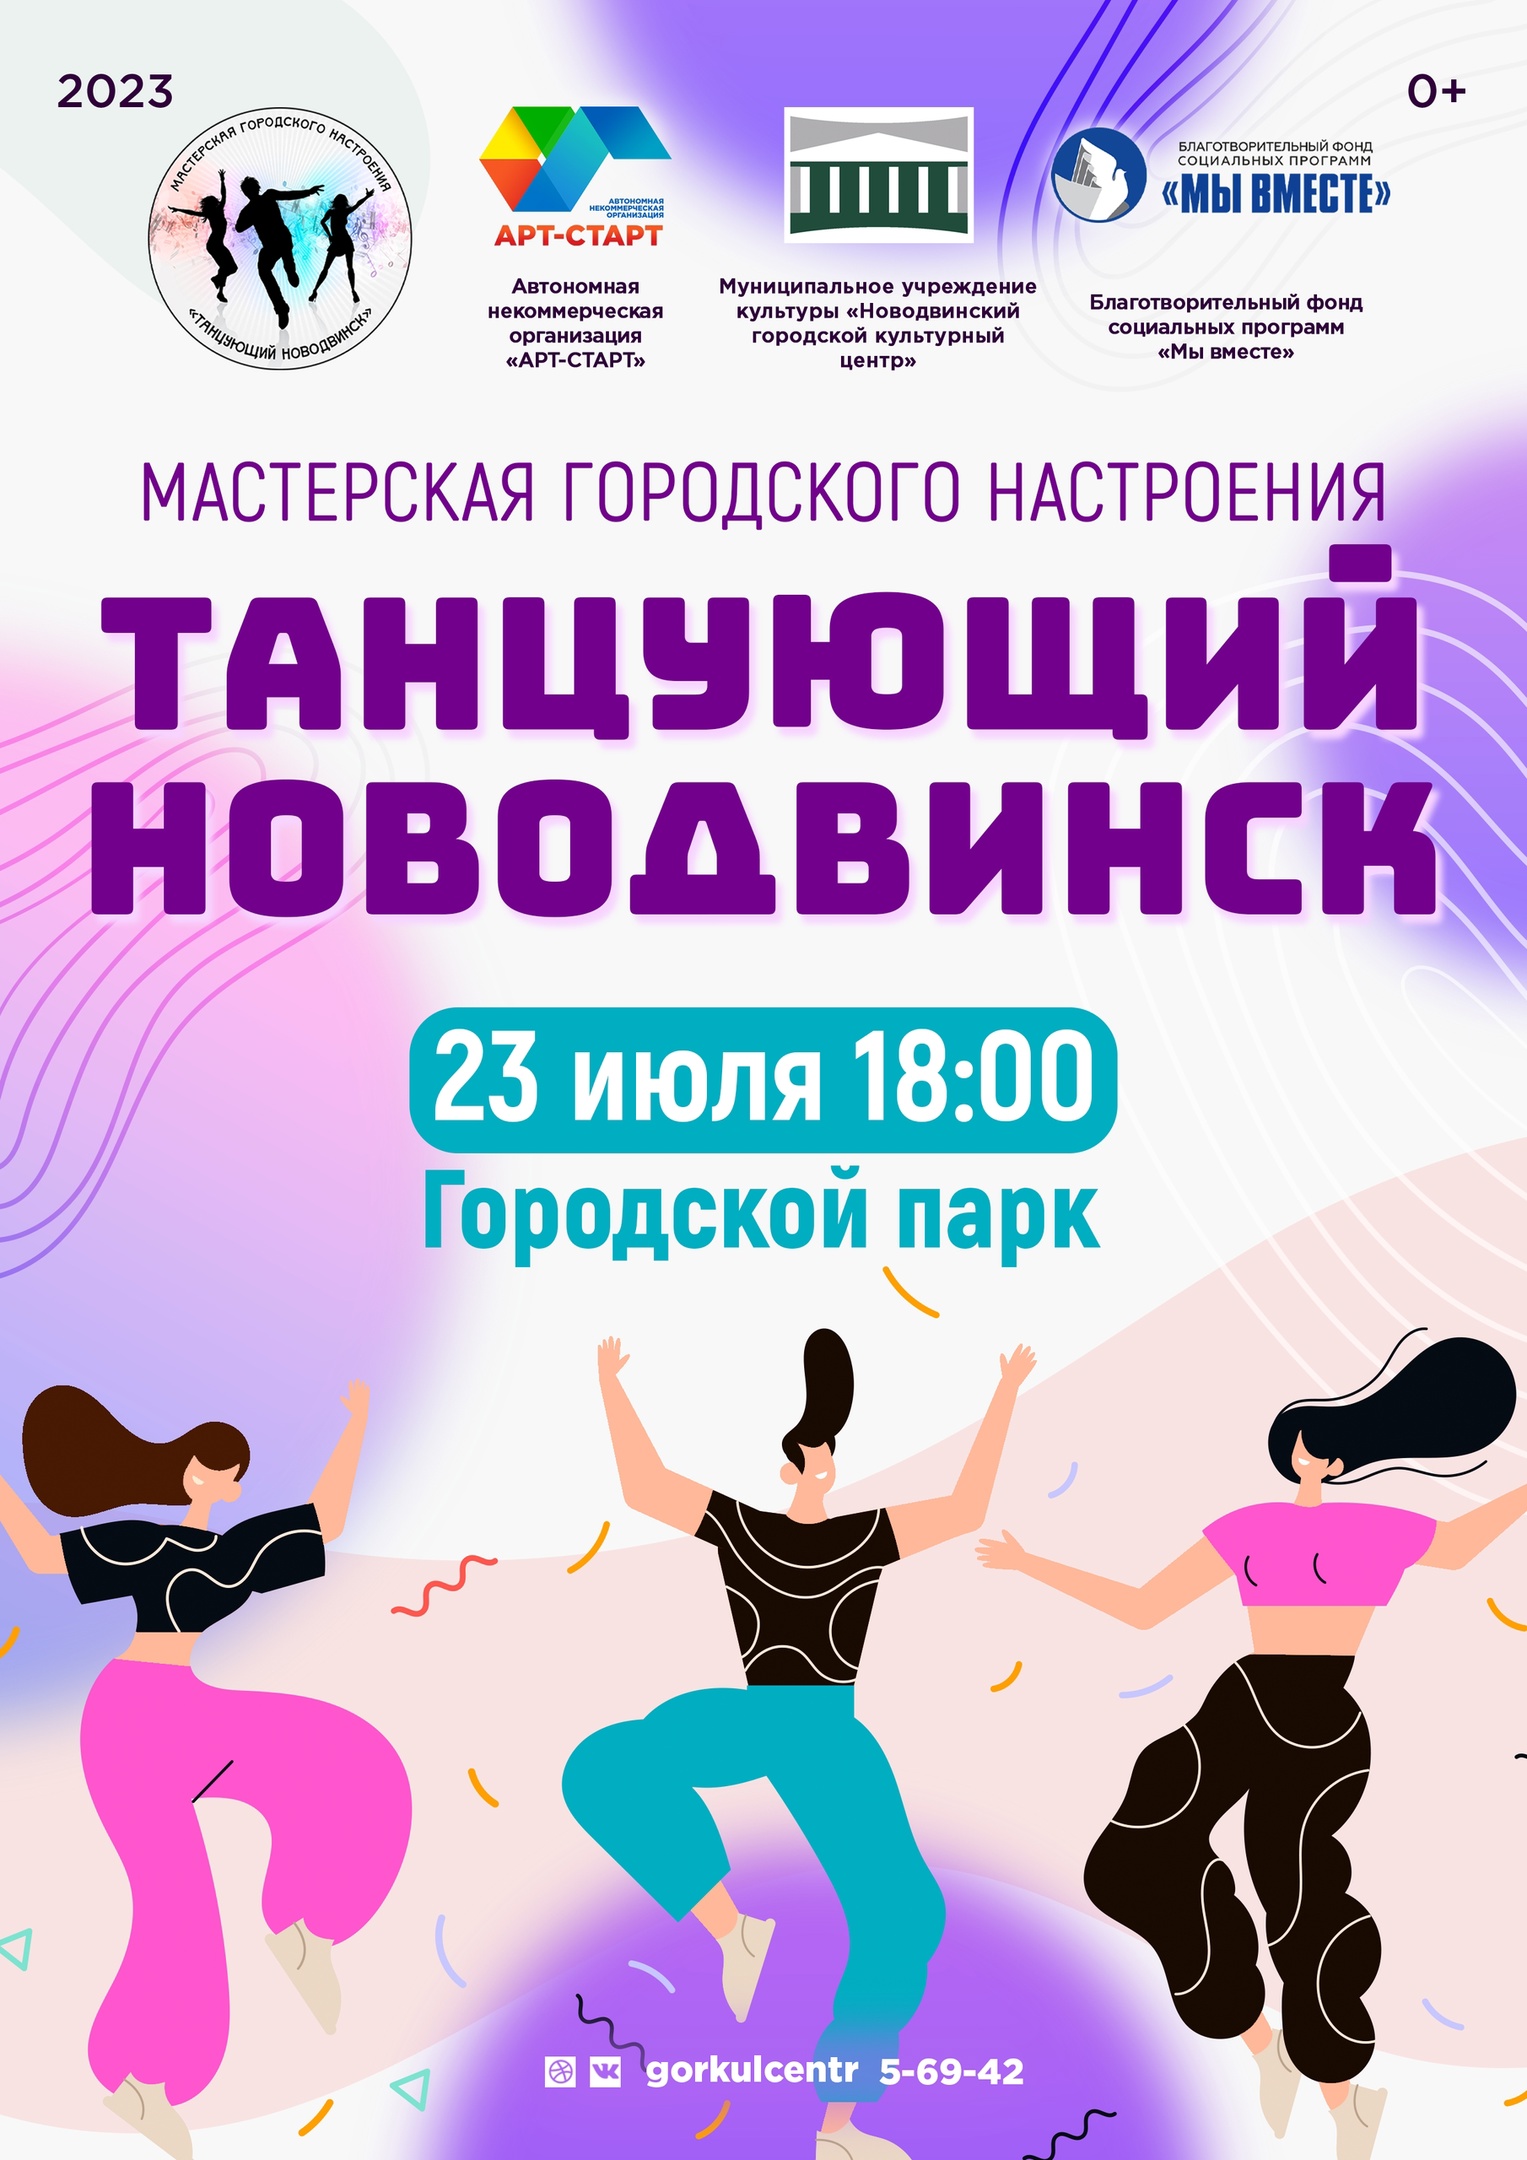 Готовьтесь к незабываемому празднику танца на мероприятии «Танцующий Новодвинск»!